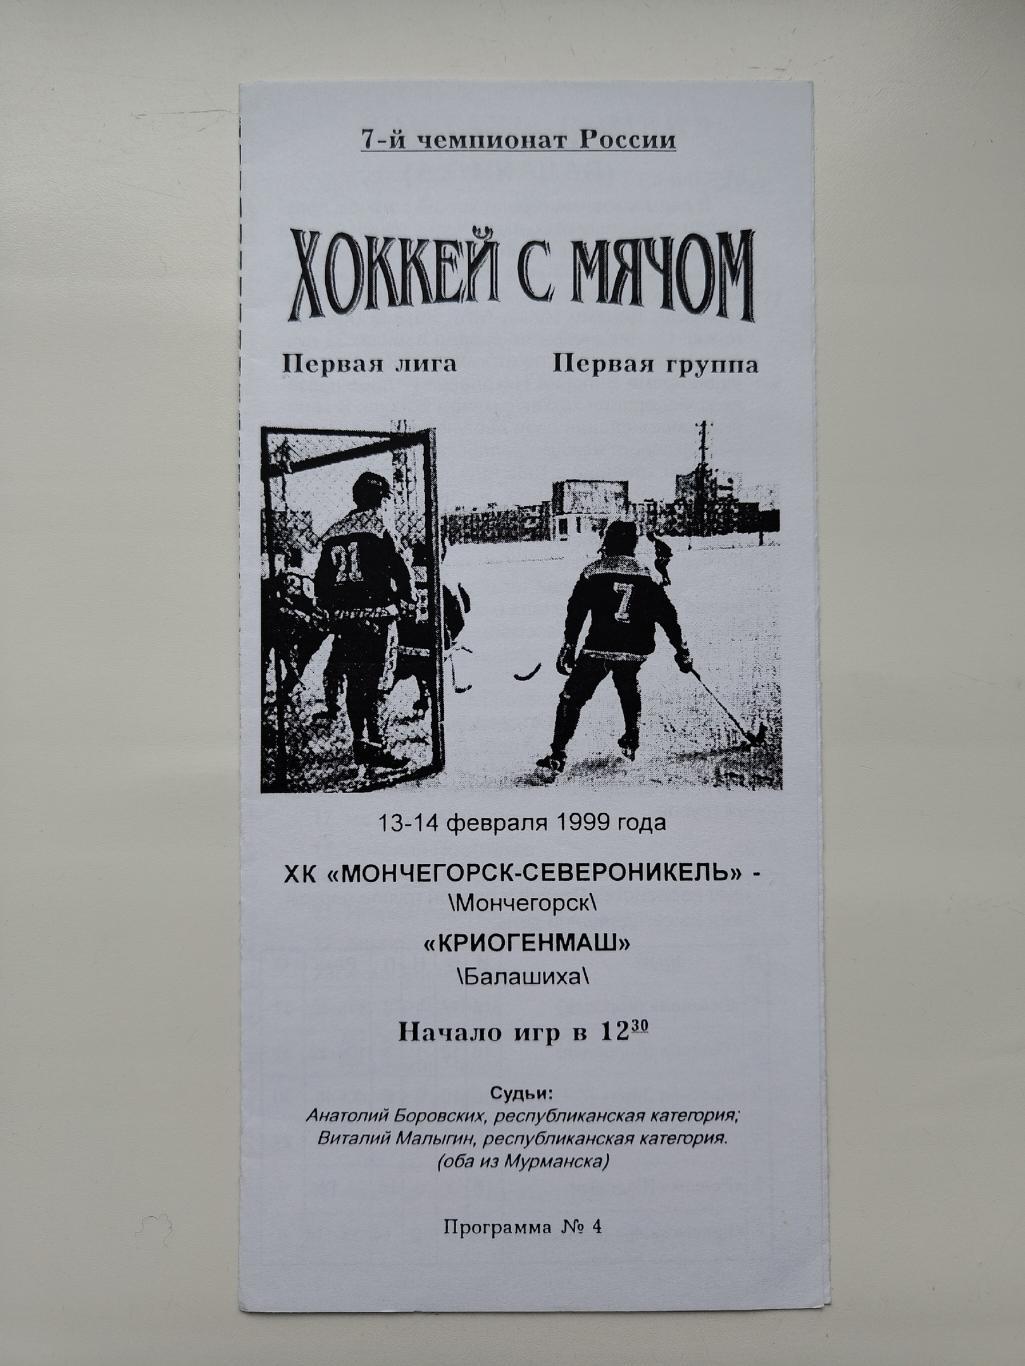 Хоккей с мячом. Мончегорск-Североникель - Криогенмаш Балашиха 13/14 февраля 1999